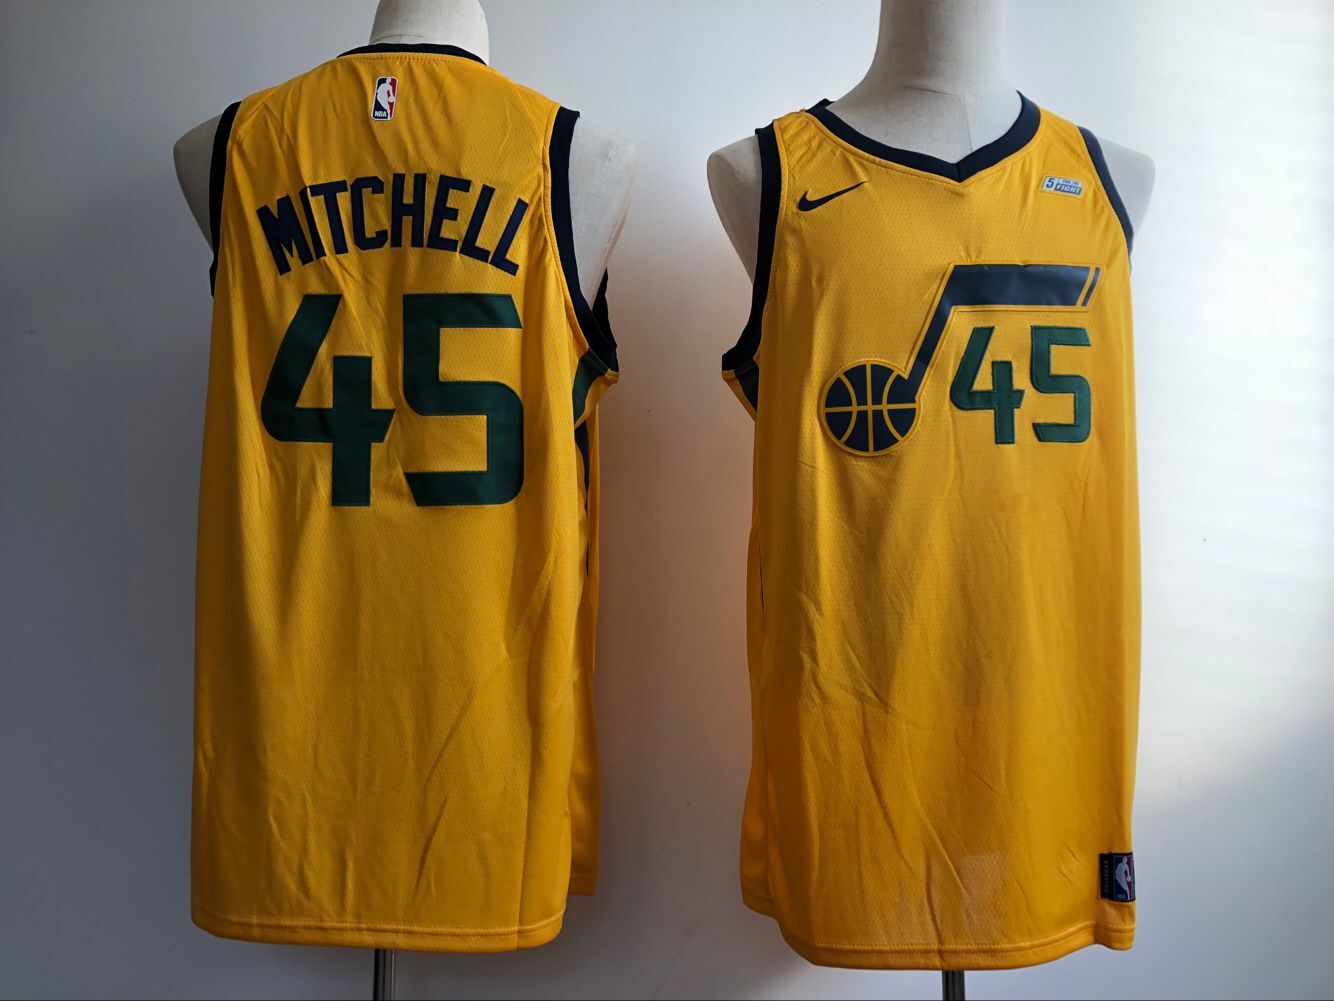 2018 Men Utah Jazz #45 Mitchell yellow Nike NBA Jerseys->utah jazz->NBA Jersey